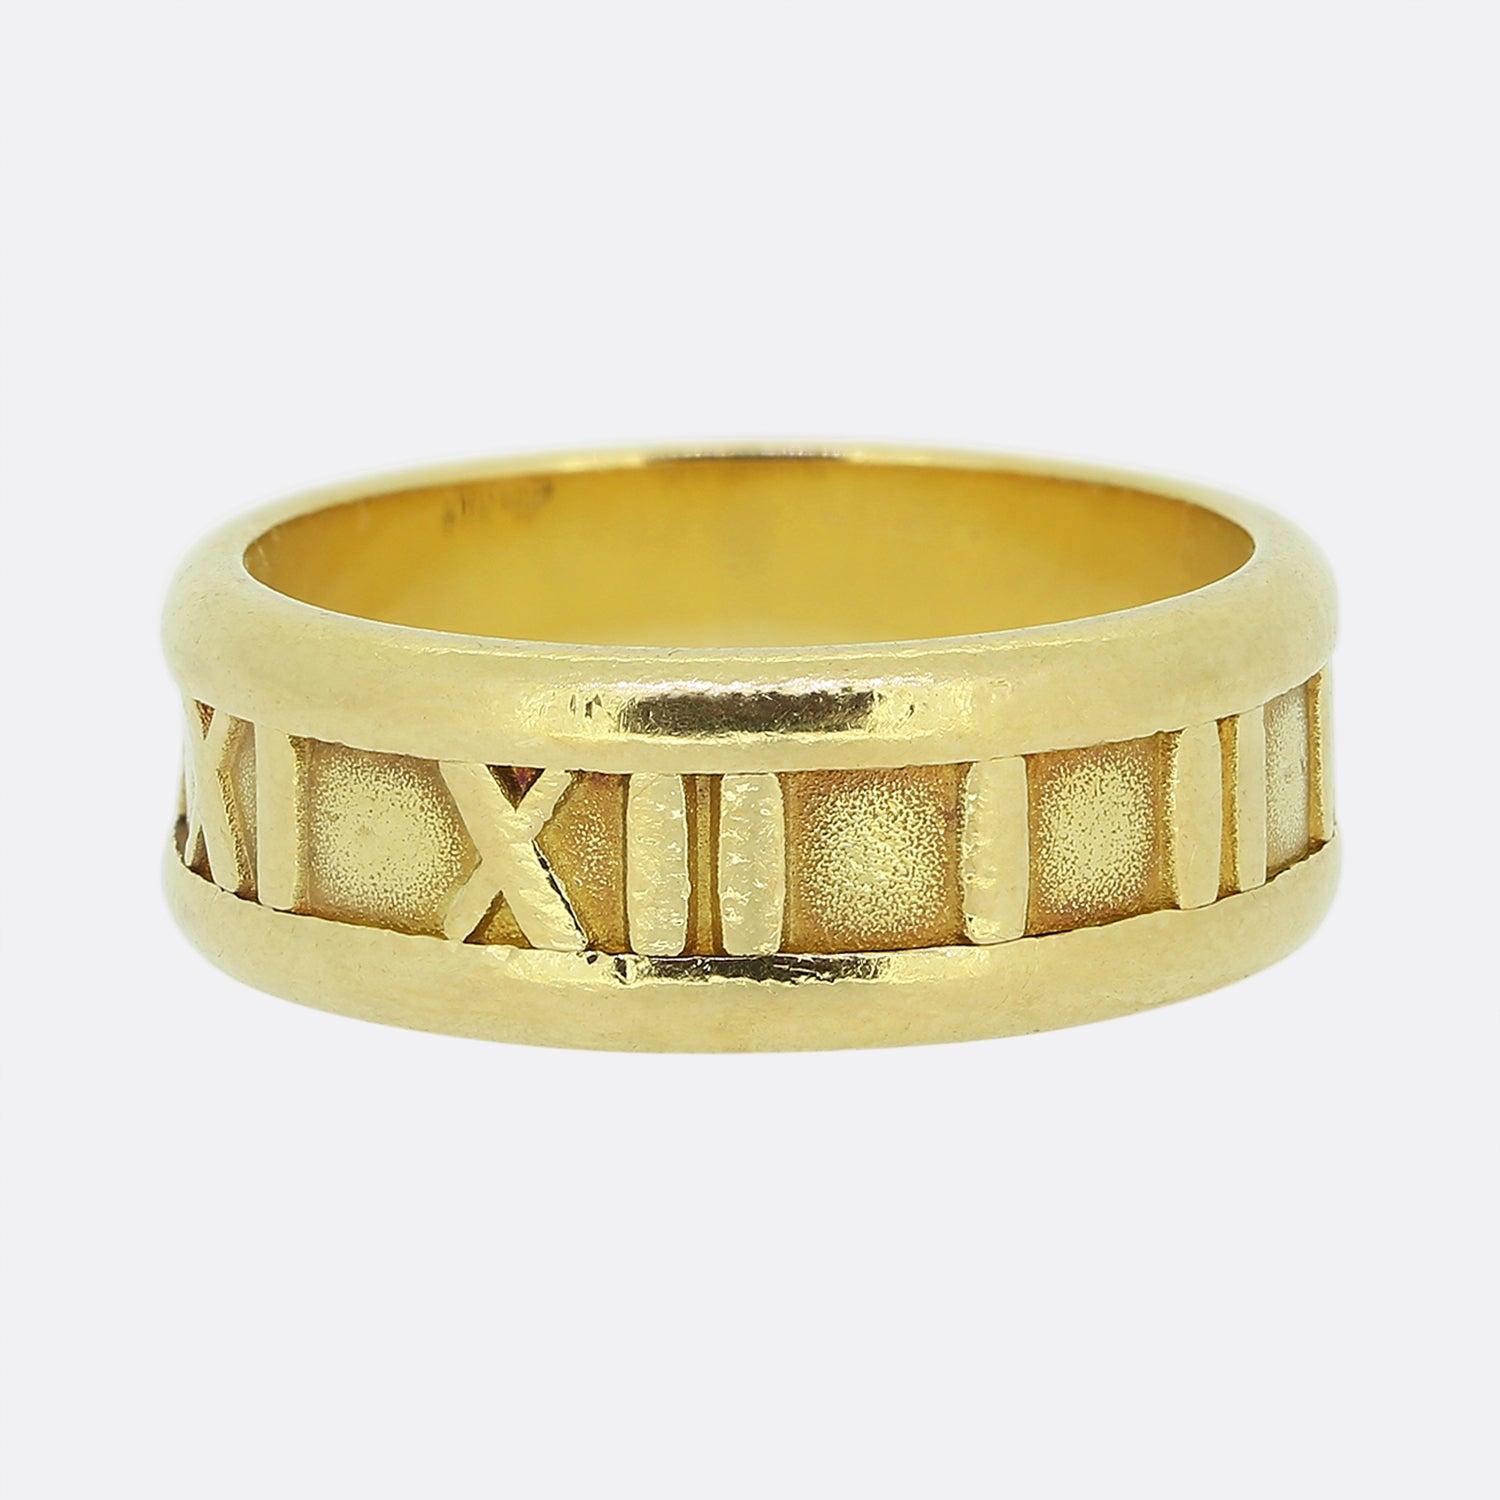 Nous avons ici une bague classique des créateurs de bijoux de renommée mondiale, Tiffany & Co. Cette pièce fait partie de la collection Atlas et met en valeur le design iconique des chiffres romains sur l'ensemble d'un bracelet en or jaune 18ct.